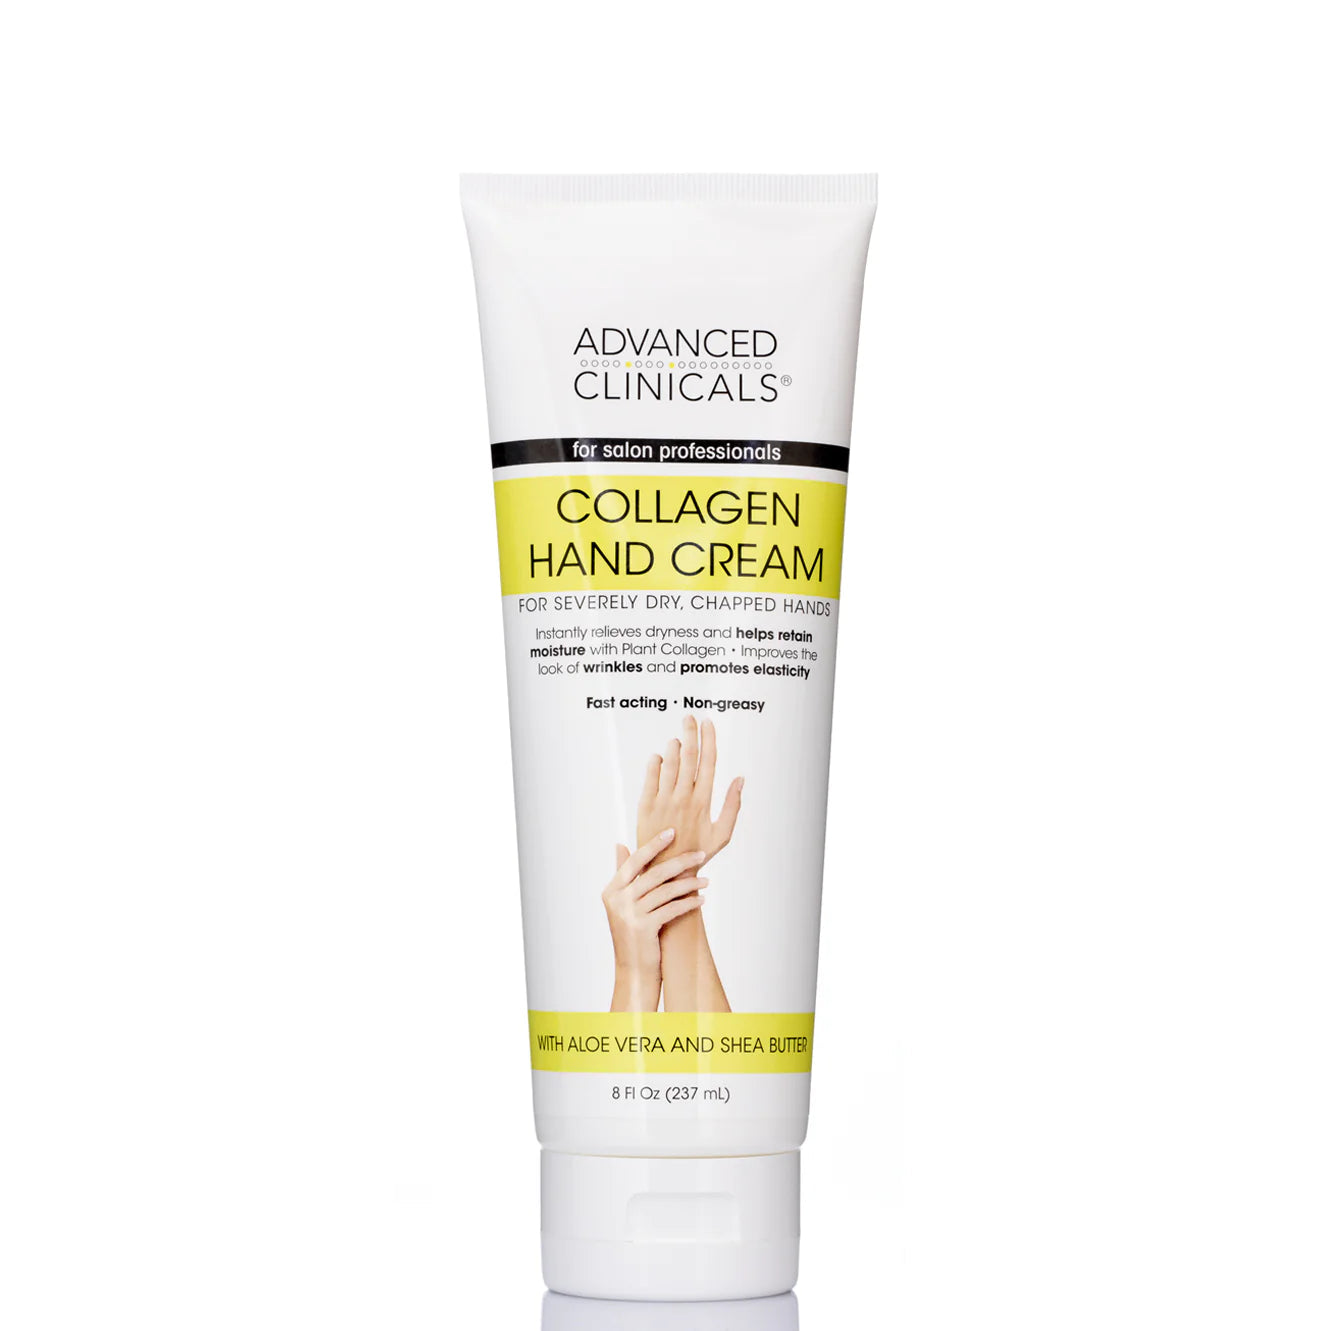 Advanced Clinicals, Collagen Hand
Cream, 8 fl oz (237 ml)